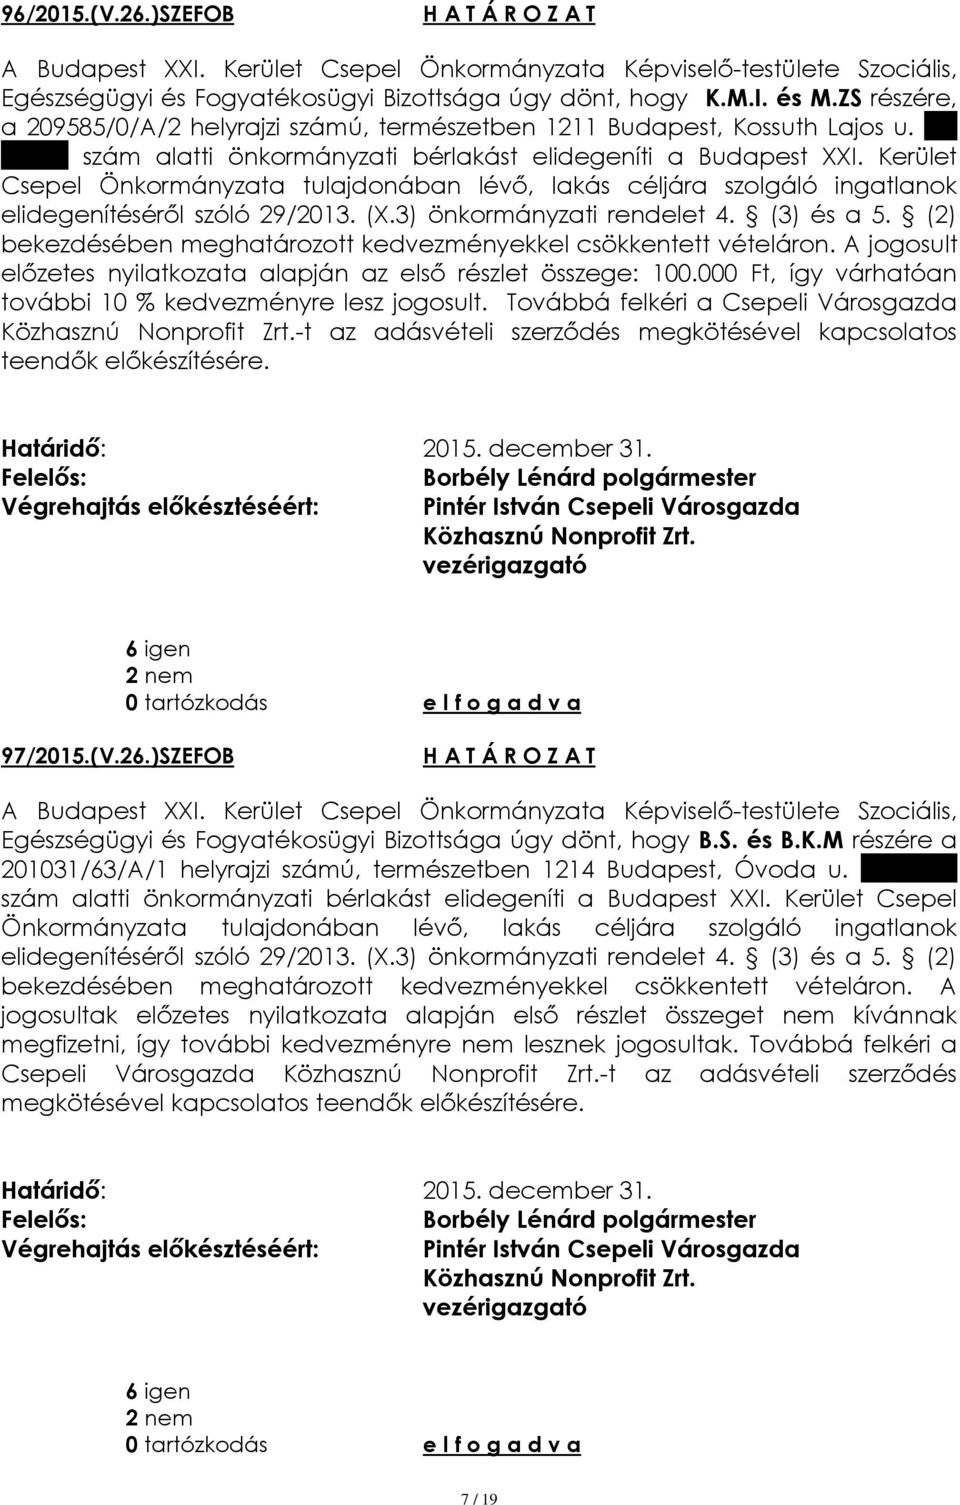 Továbbá felkéri a Csepeli Városgazda -t az adásvételi szerződés megkötésével kapcsolatos teendők előkészítésére. 97/2015.(V.26.)SZEFOB Egészségügyi és Fogyatékosügyi Bizottsága úgy dönt, hogy B.S. és B.